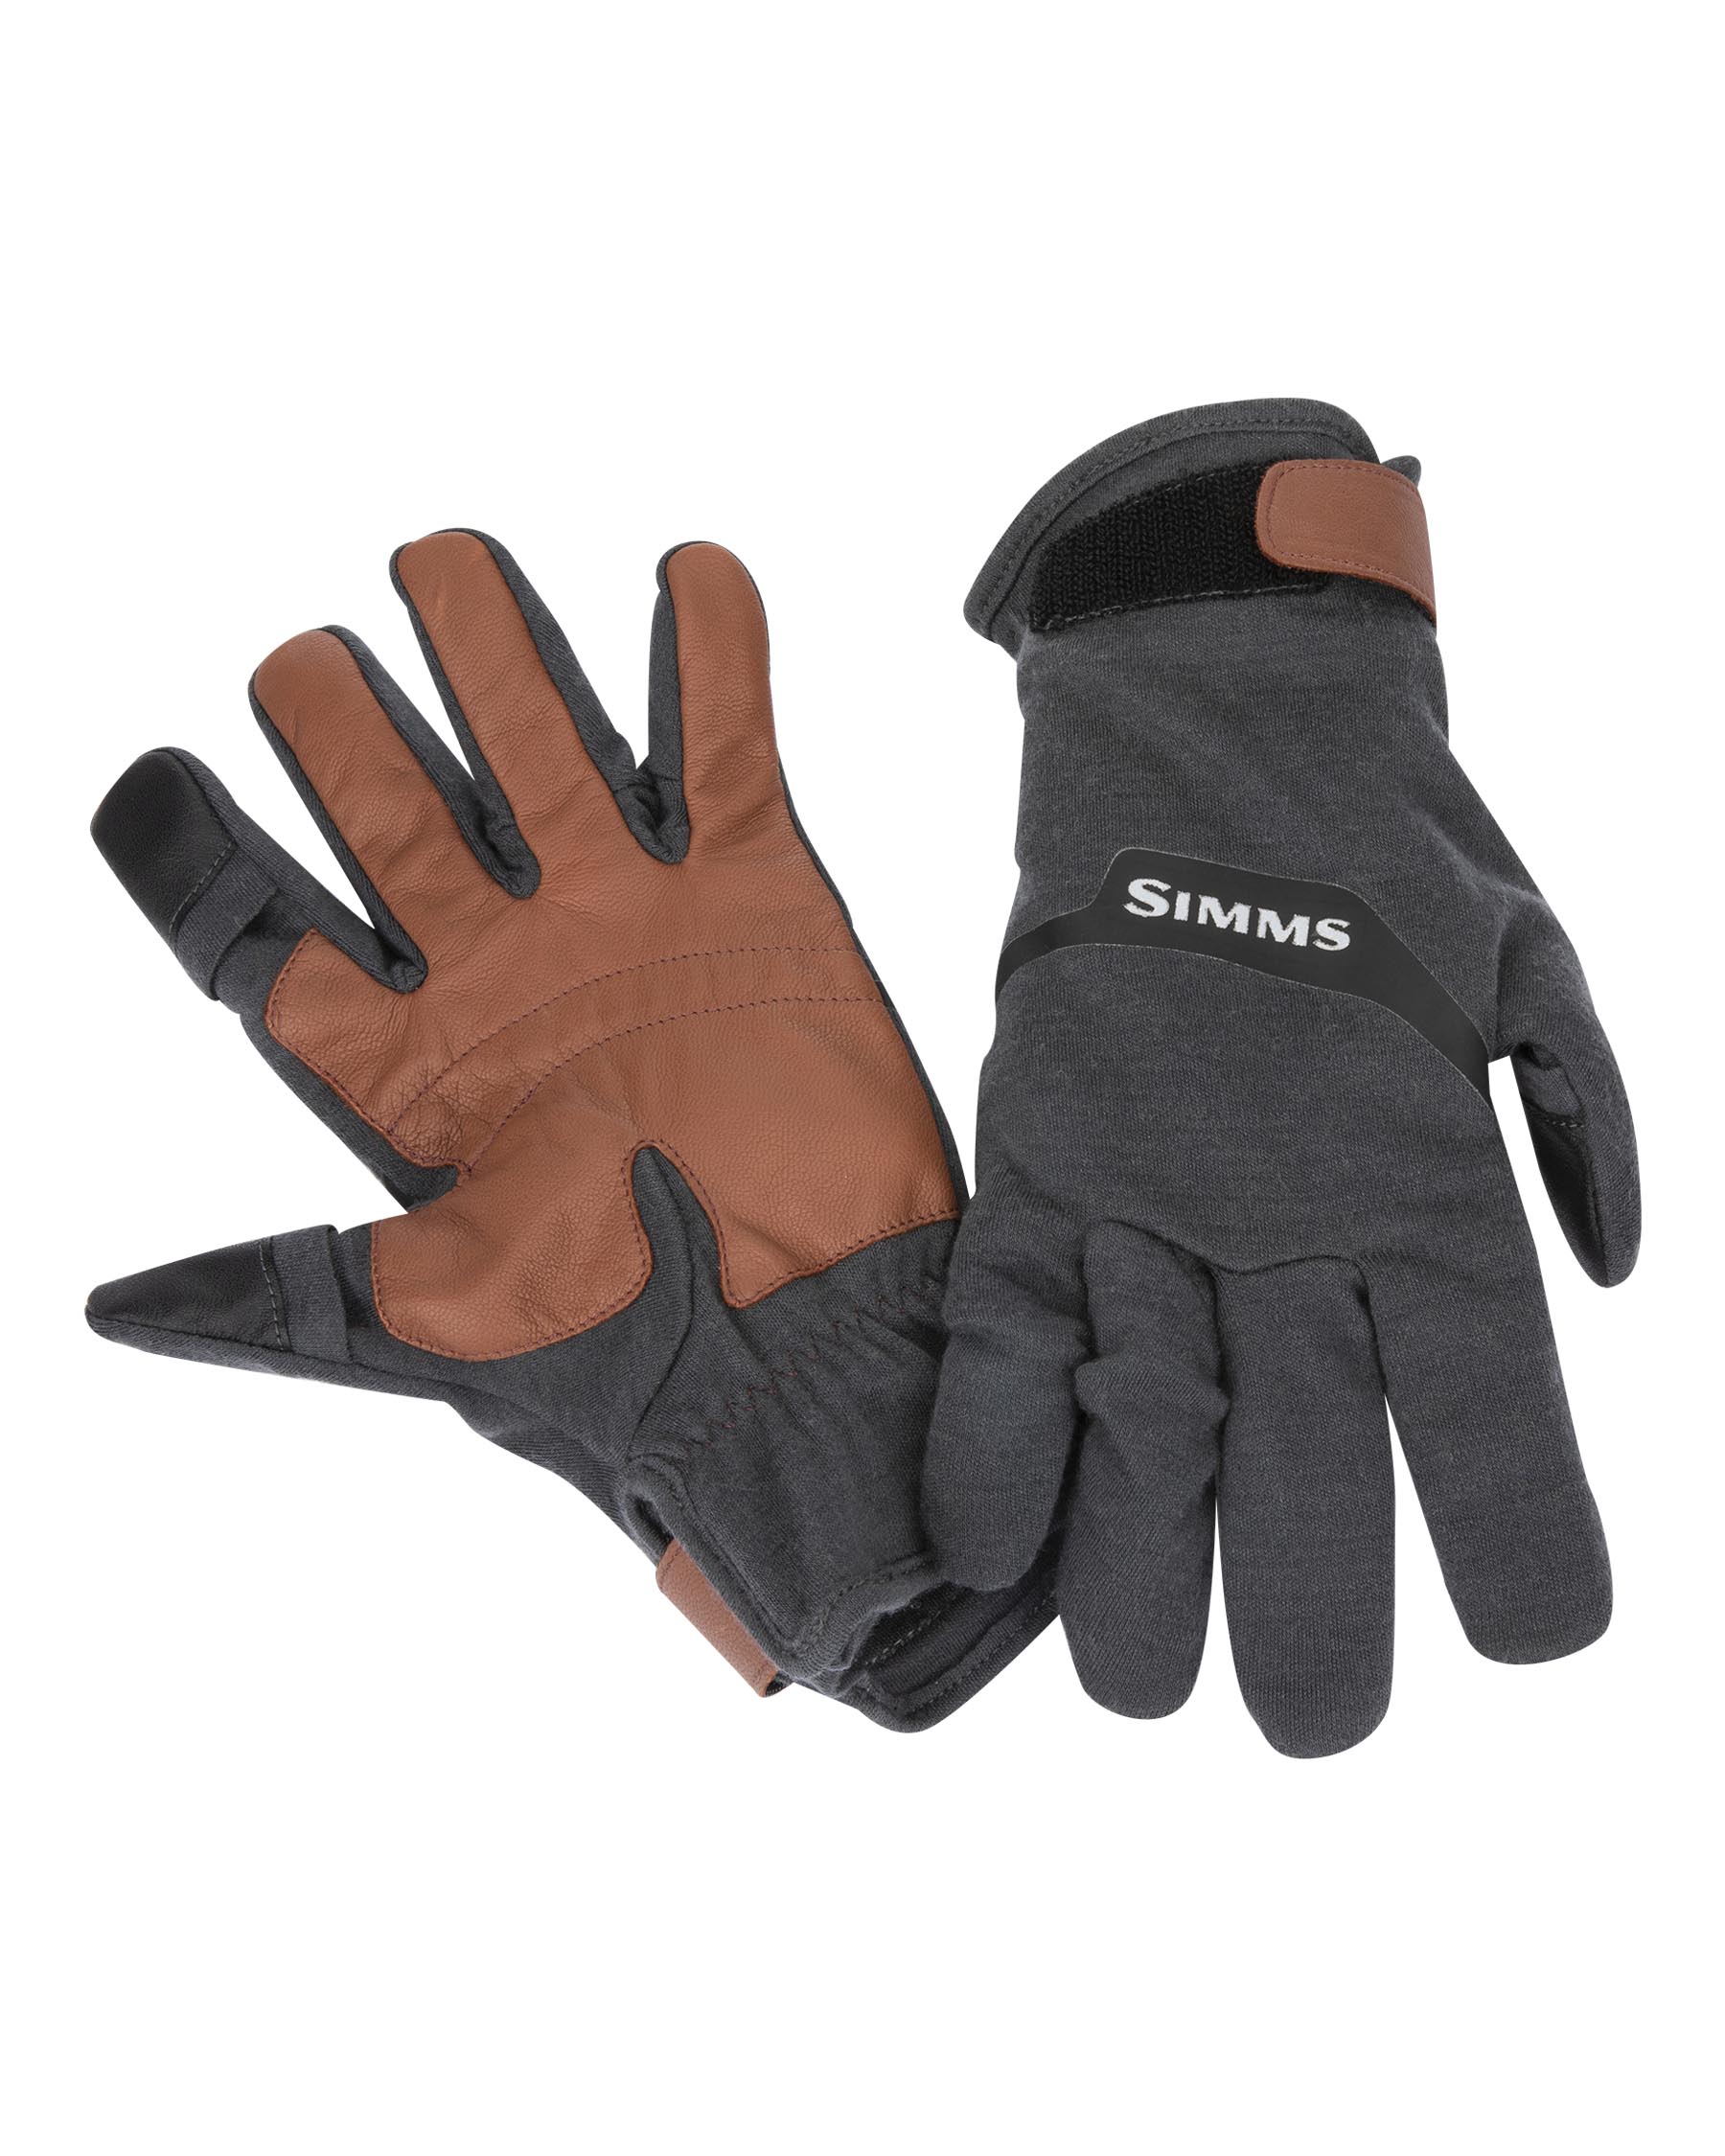 Lightweight Wool Flex Glove | Simms | マーヴェリック / Maverick